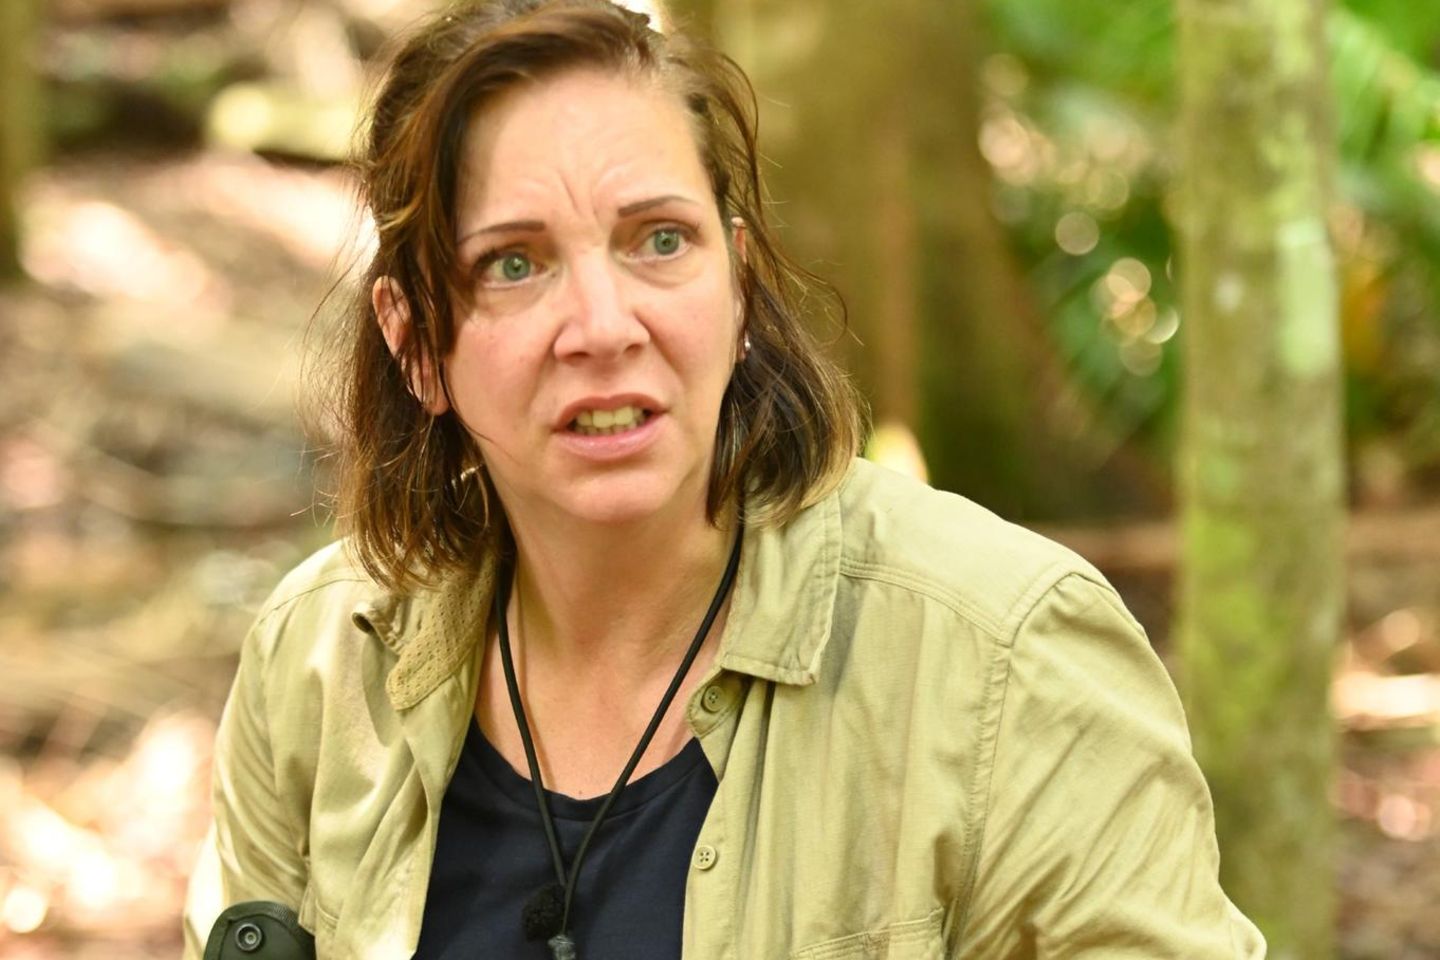 Dschungelcamp 2020: Rächen sich Mit-Camper jetzt an Danni Büchner?